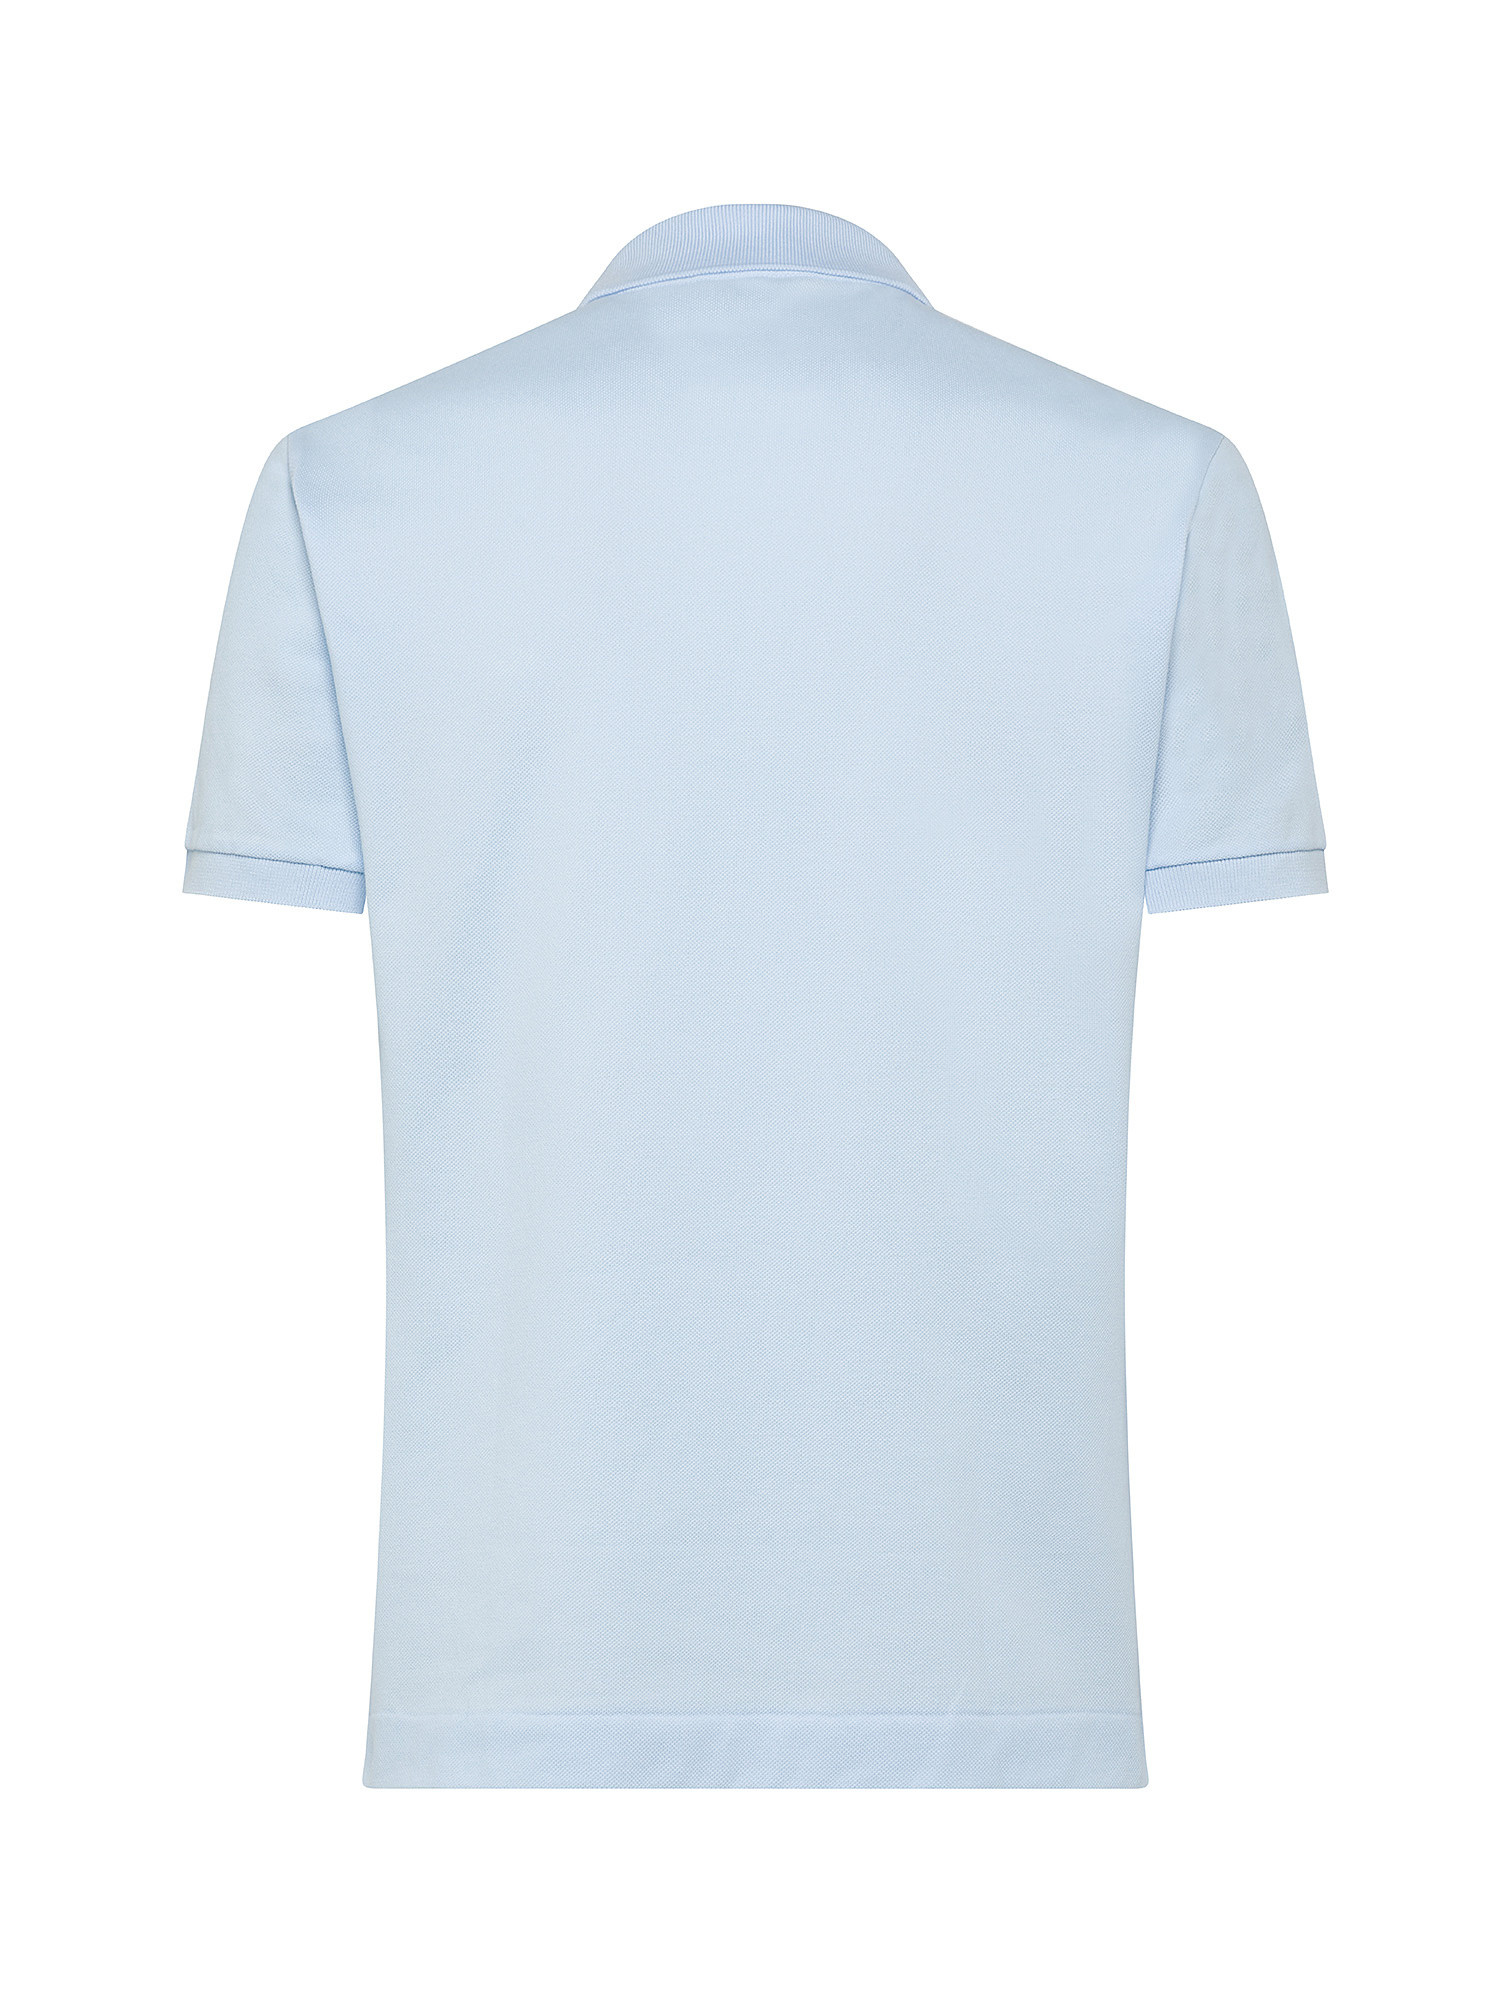 Lacoste - Classic cut polo shirt in petit piquè cotton, Light Blue, large image number 1